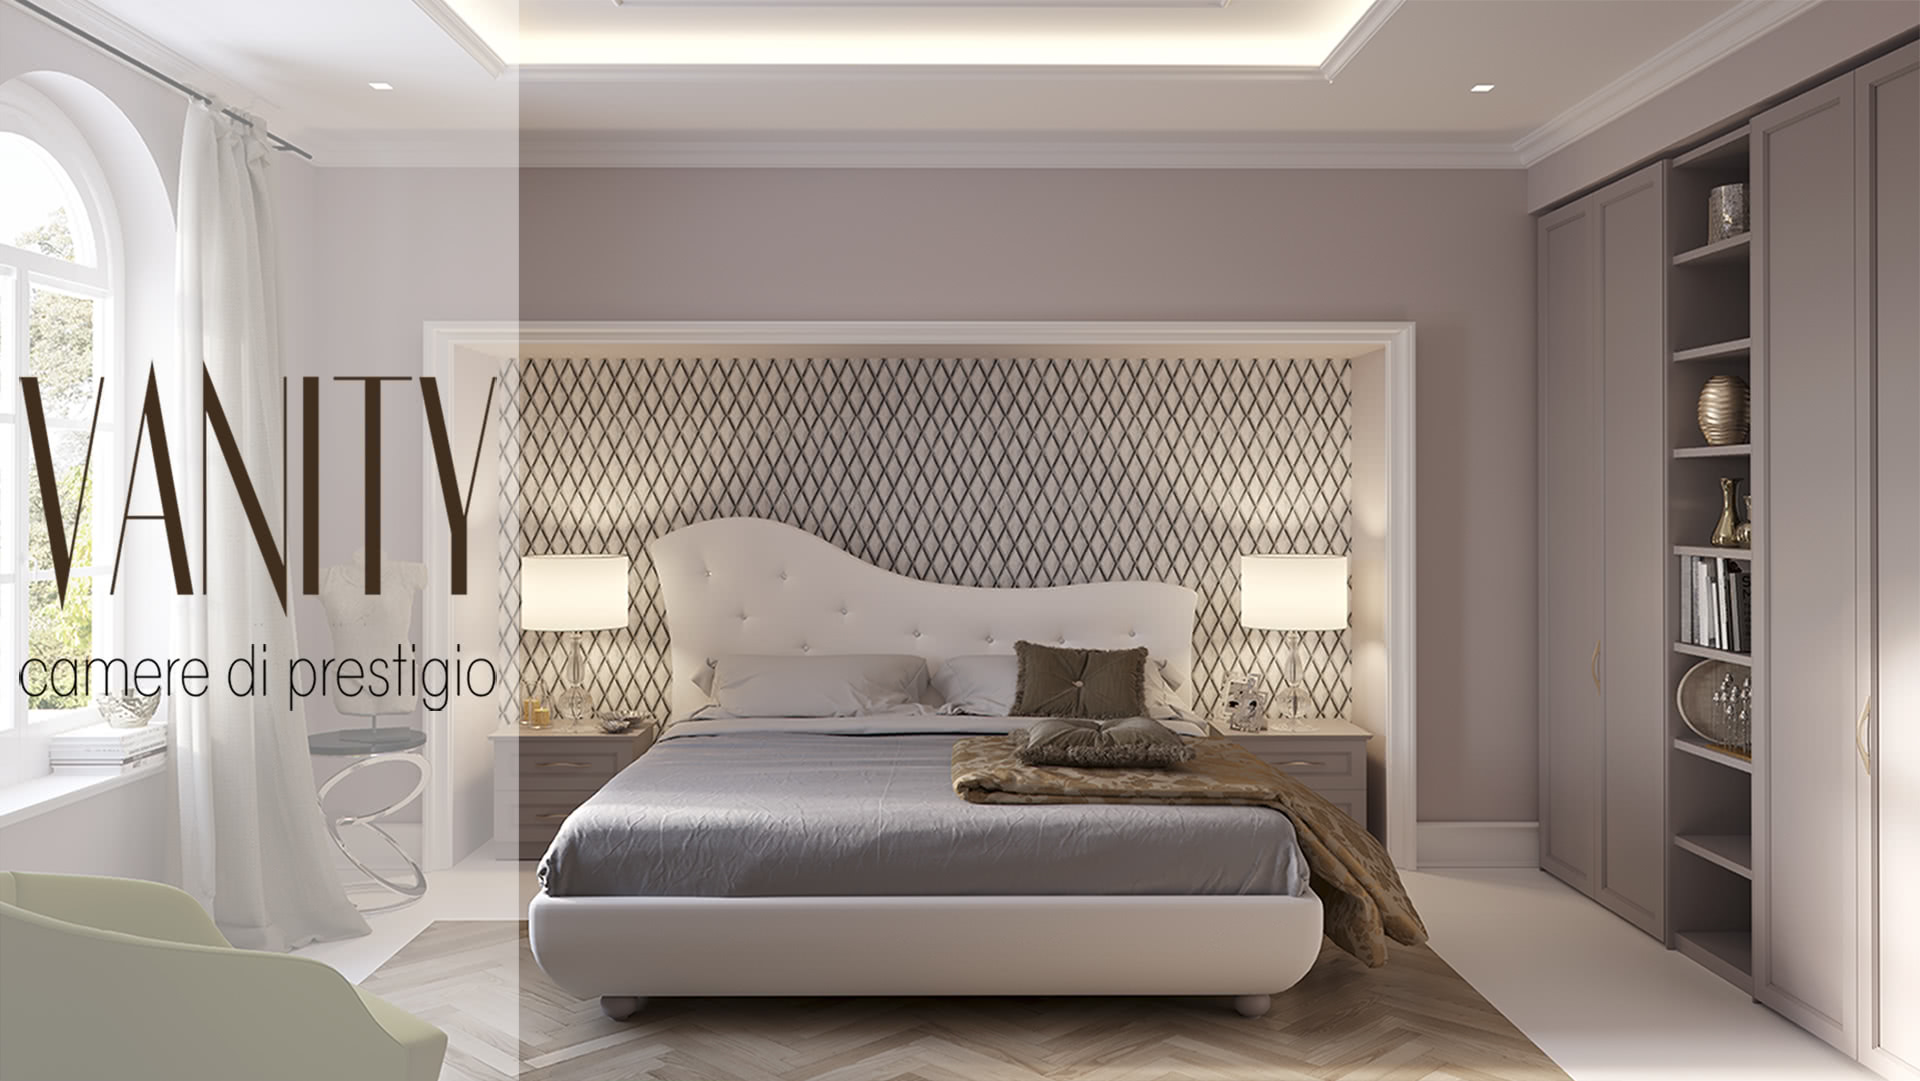 Vanity - prestige bedrooms - Giessegi - Qualità e risparmio hanno trovato casa.	